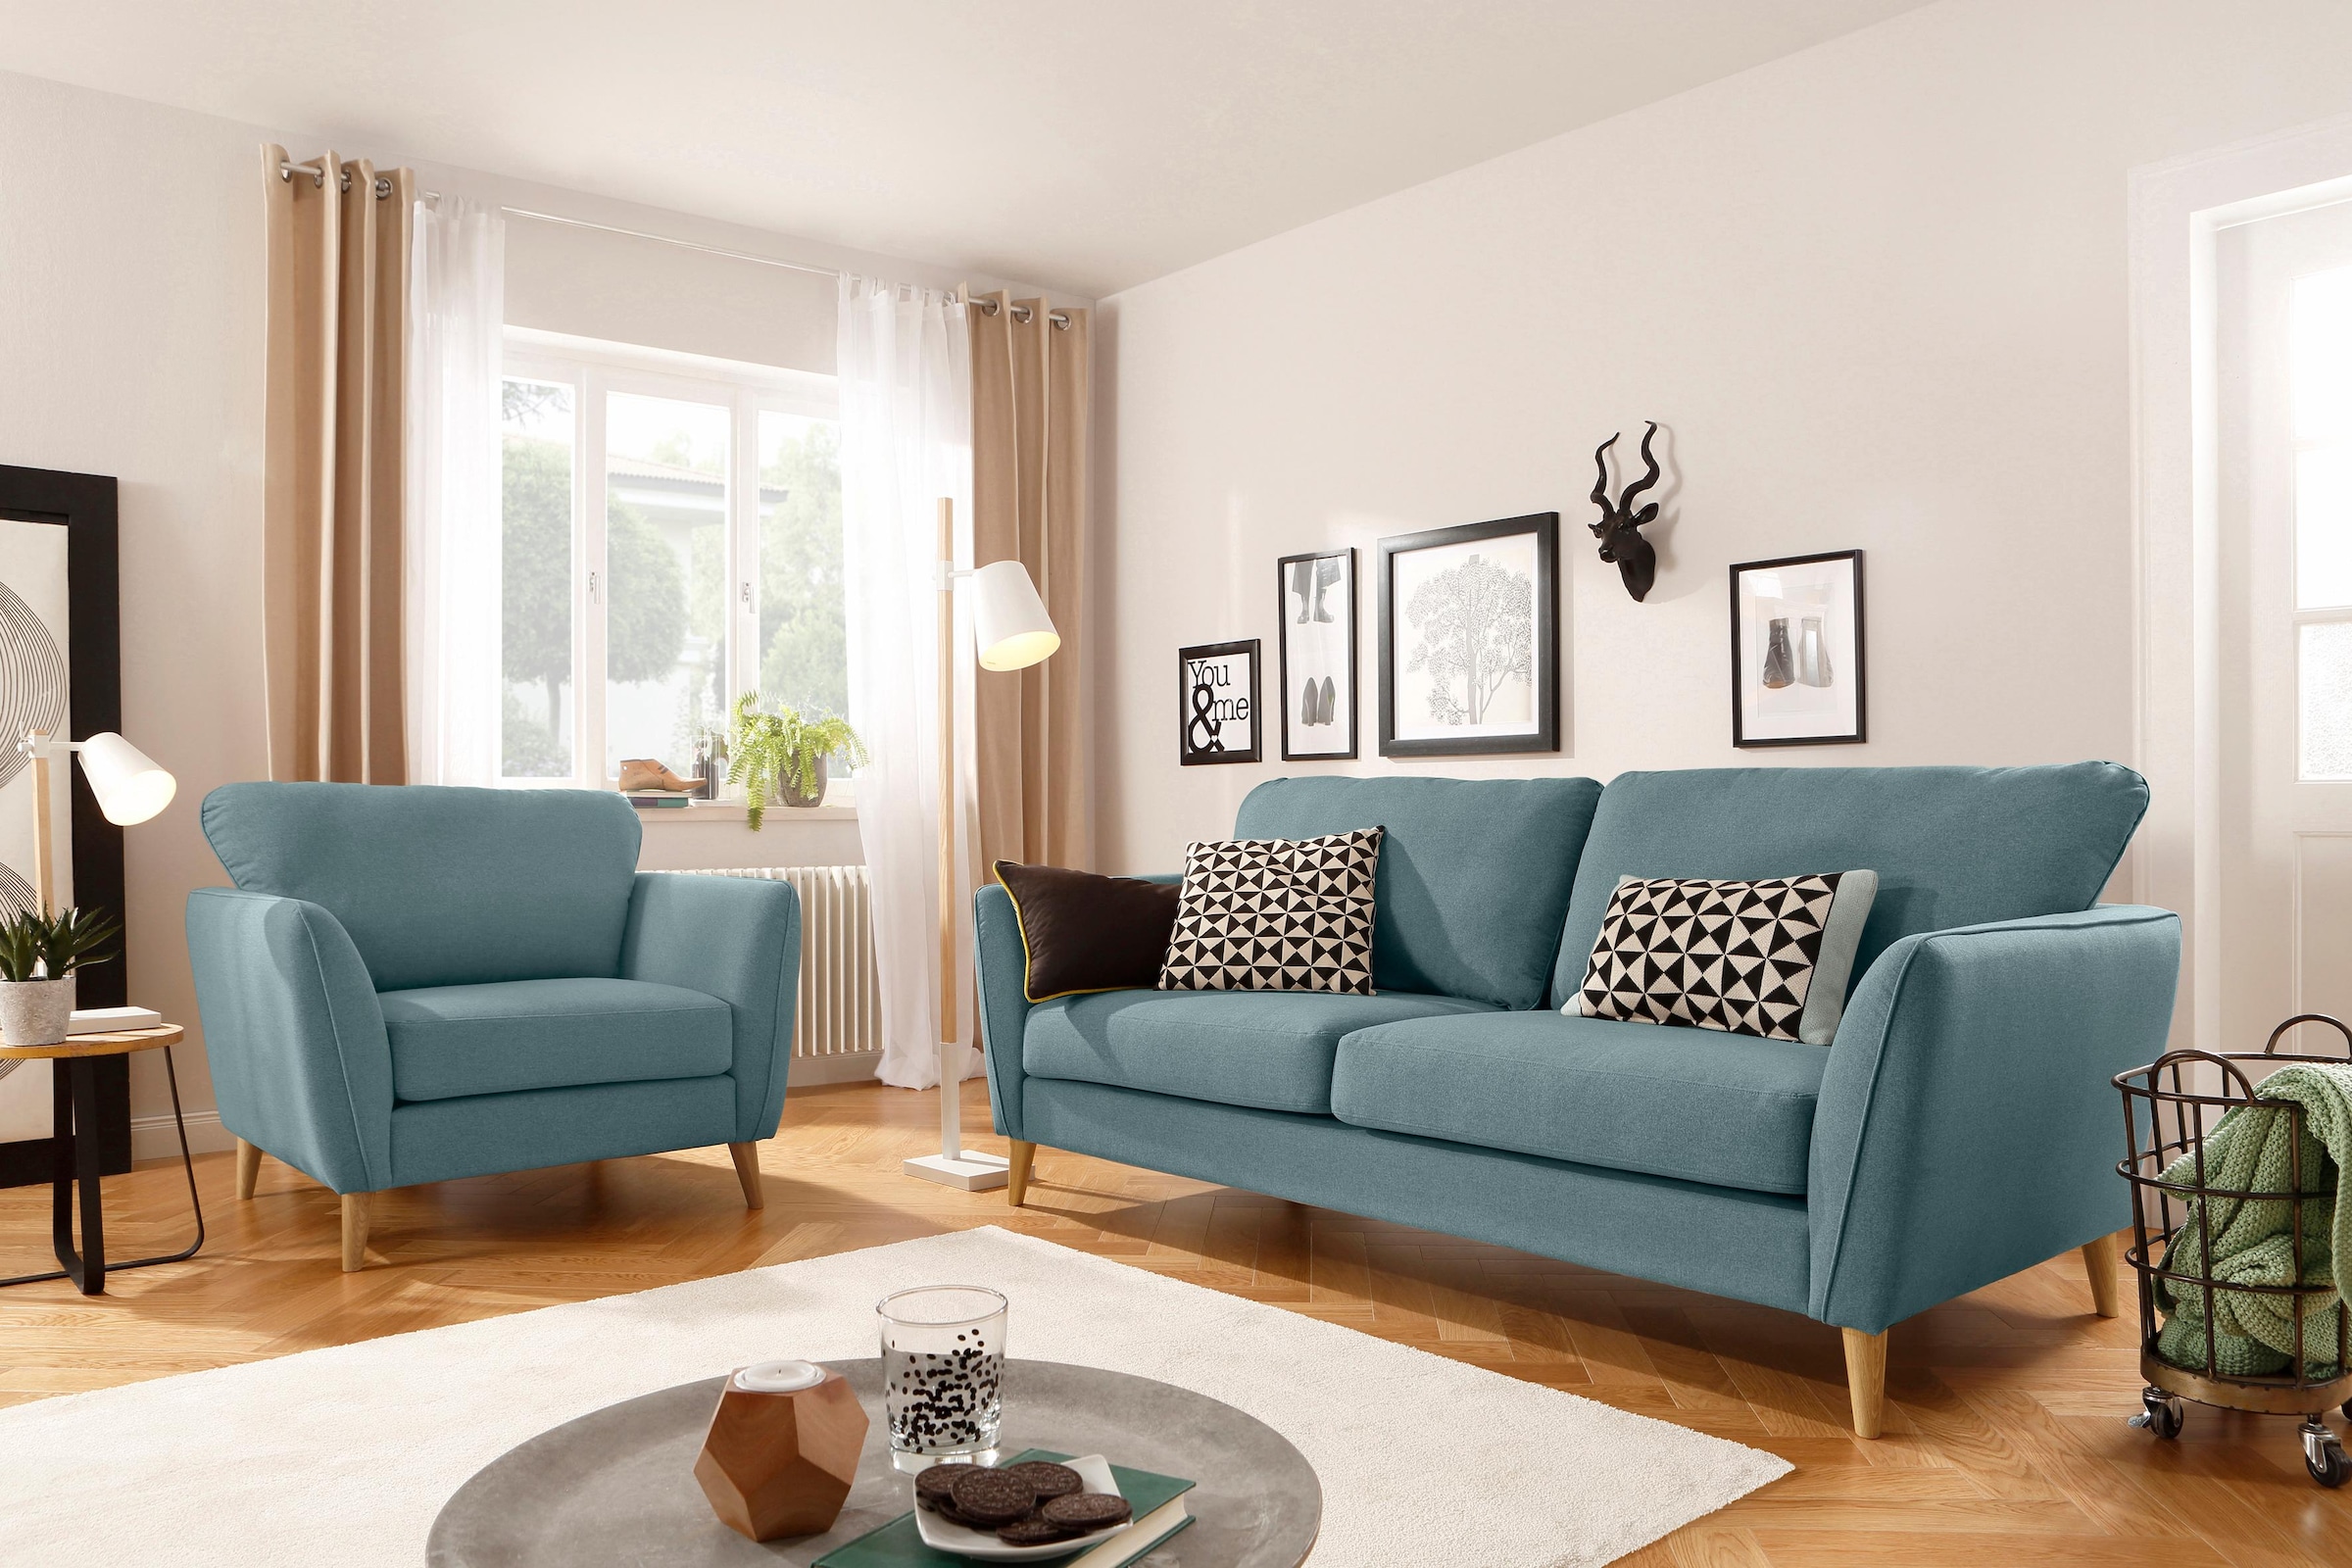 Home affaire 3-Sitzer »MARSEILLE Sofa 206 cm«, mit Massivholzbeinen aus Eiche, verschiedene Bezüge und Farbvarianten